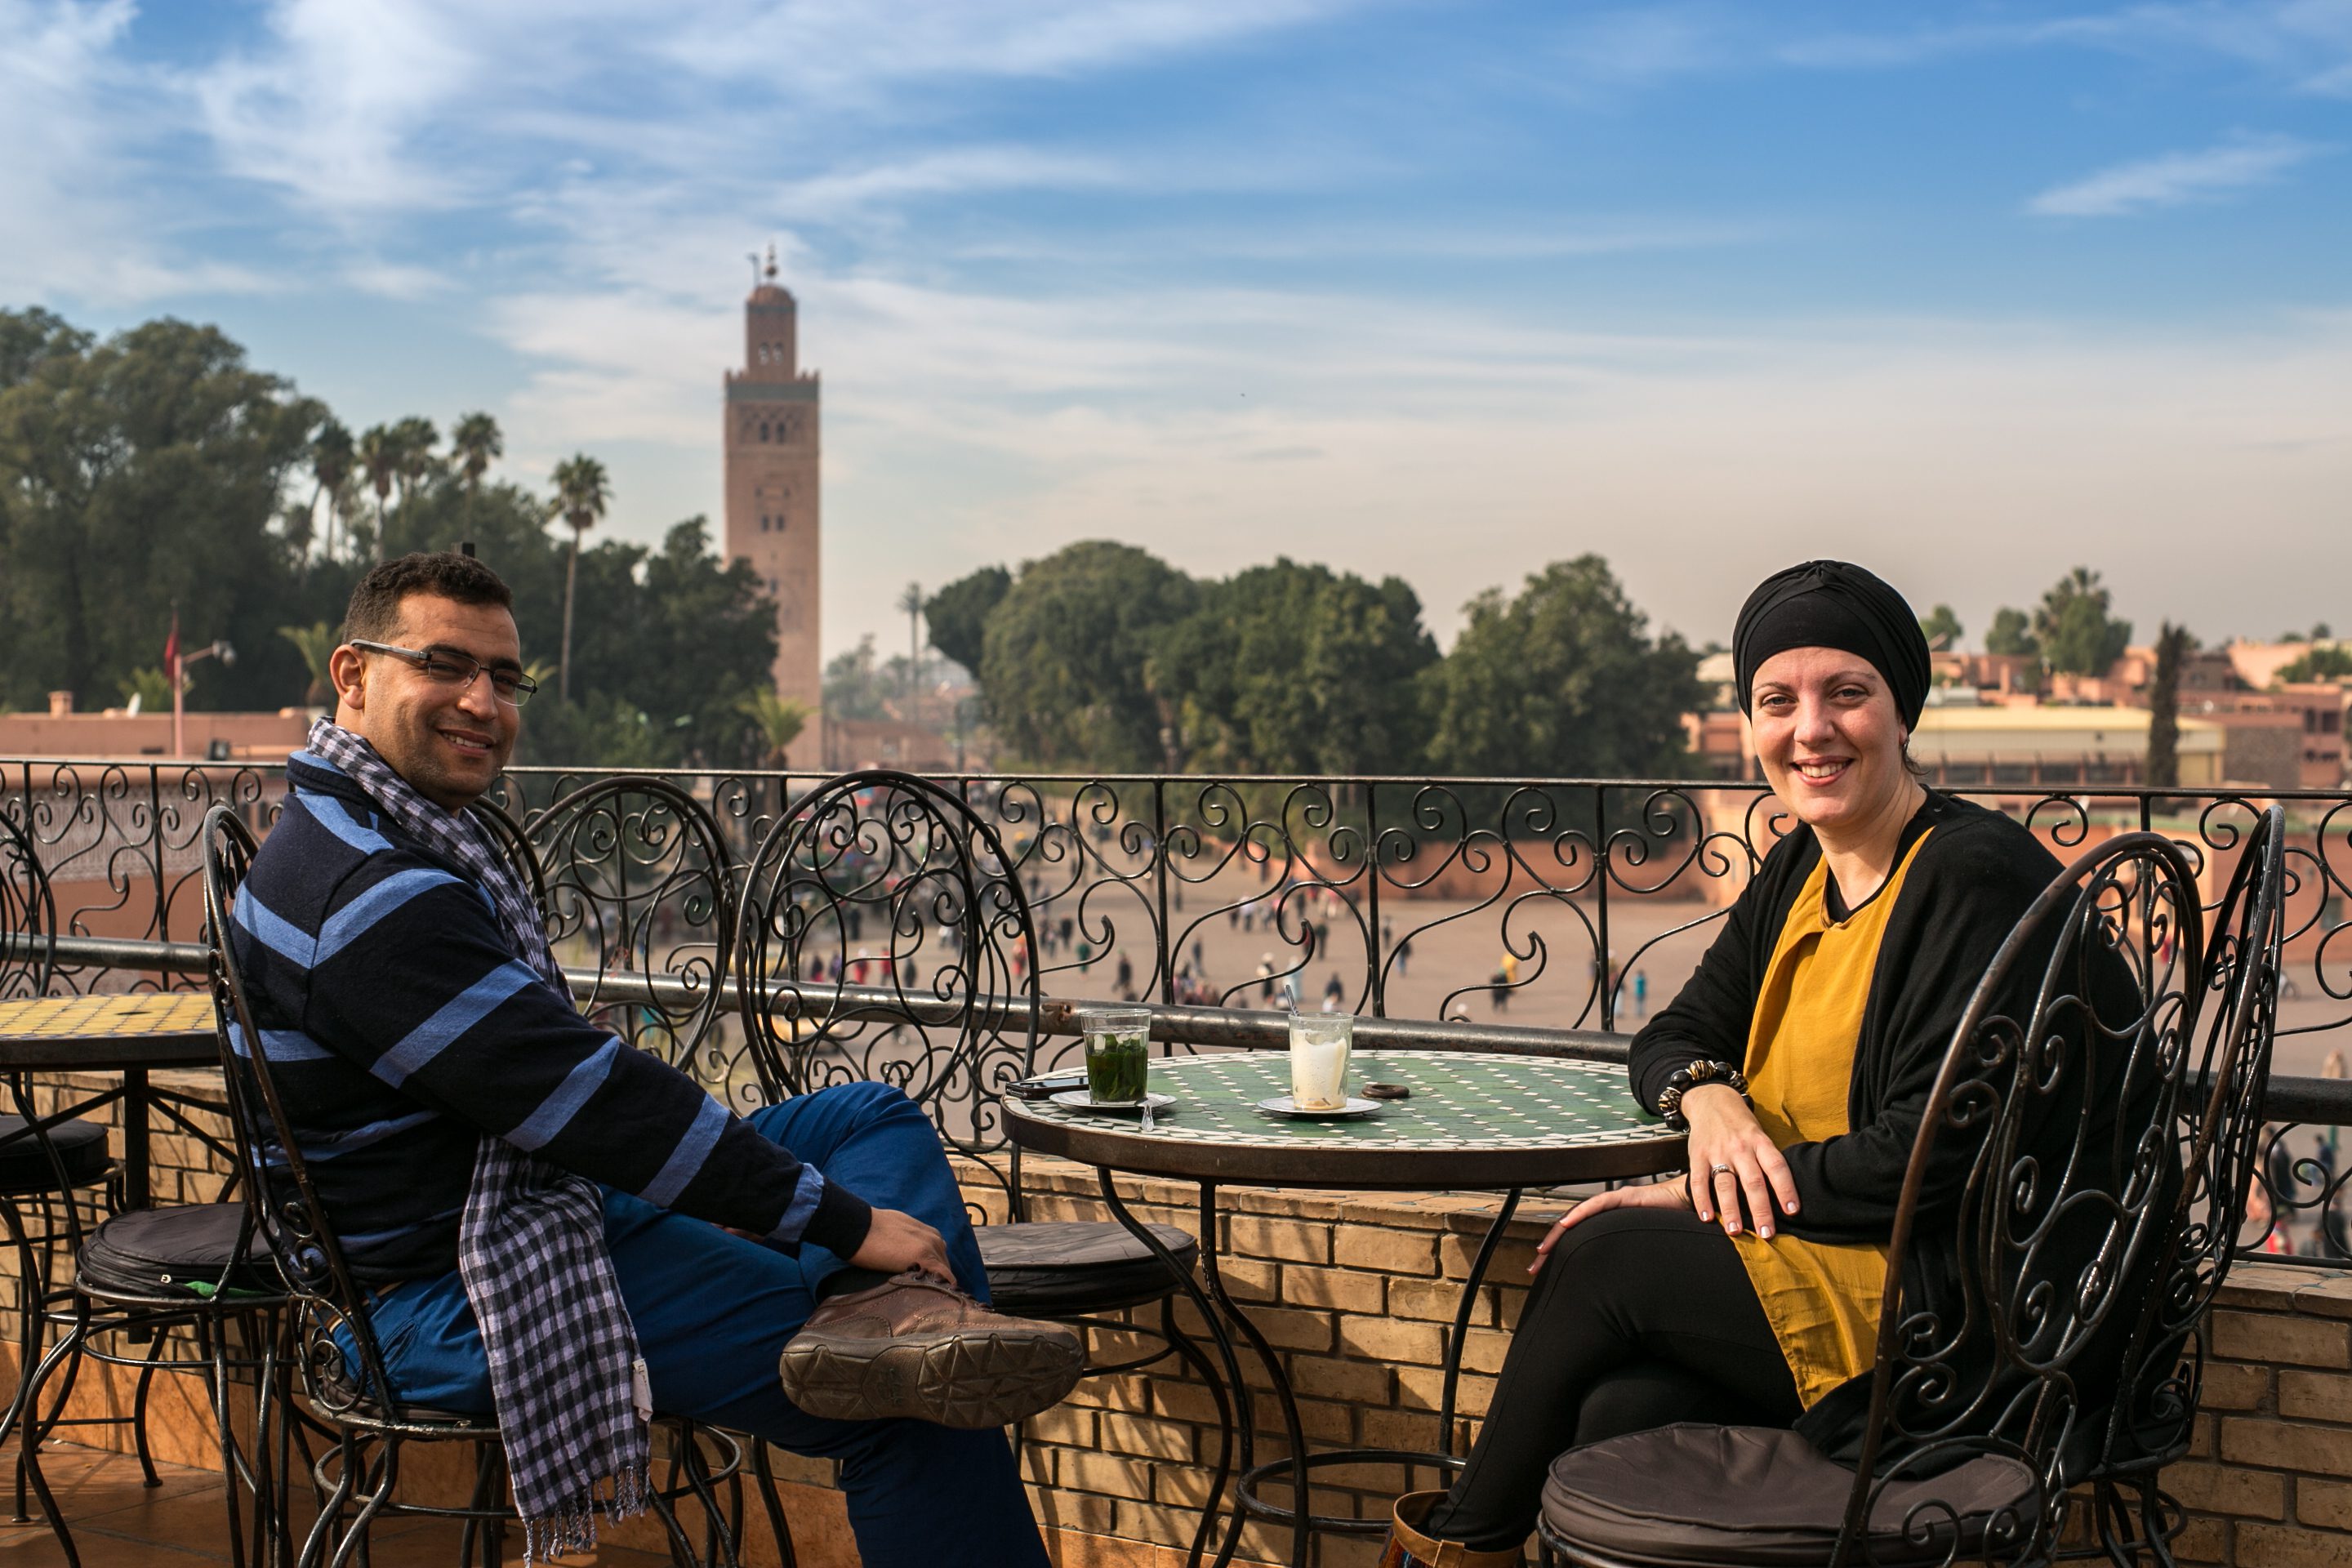 Nuria de Viajes Marrakech: “Marruecos es un destino apto para todo tipo de viajeros de 0 a 99 años”